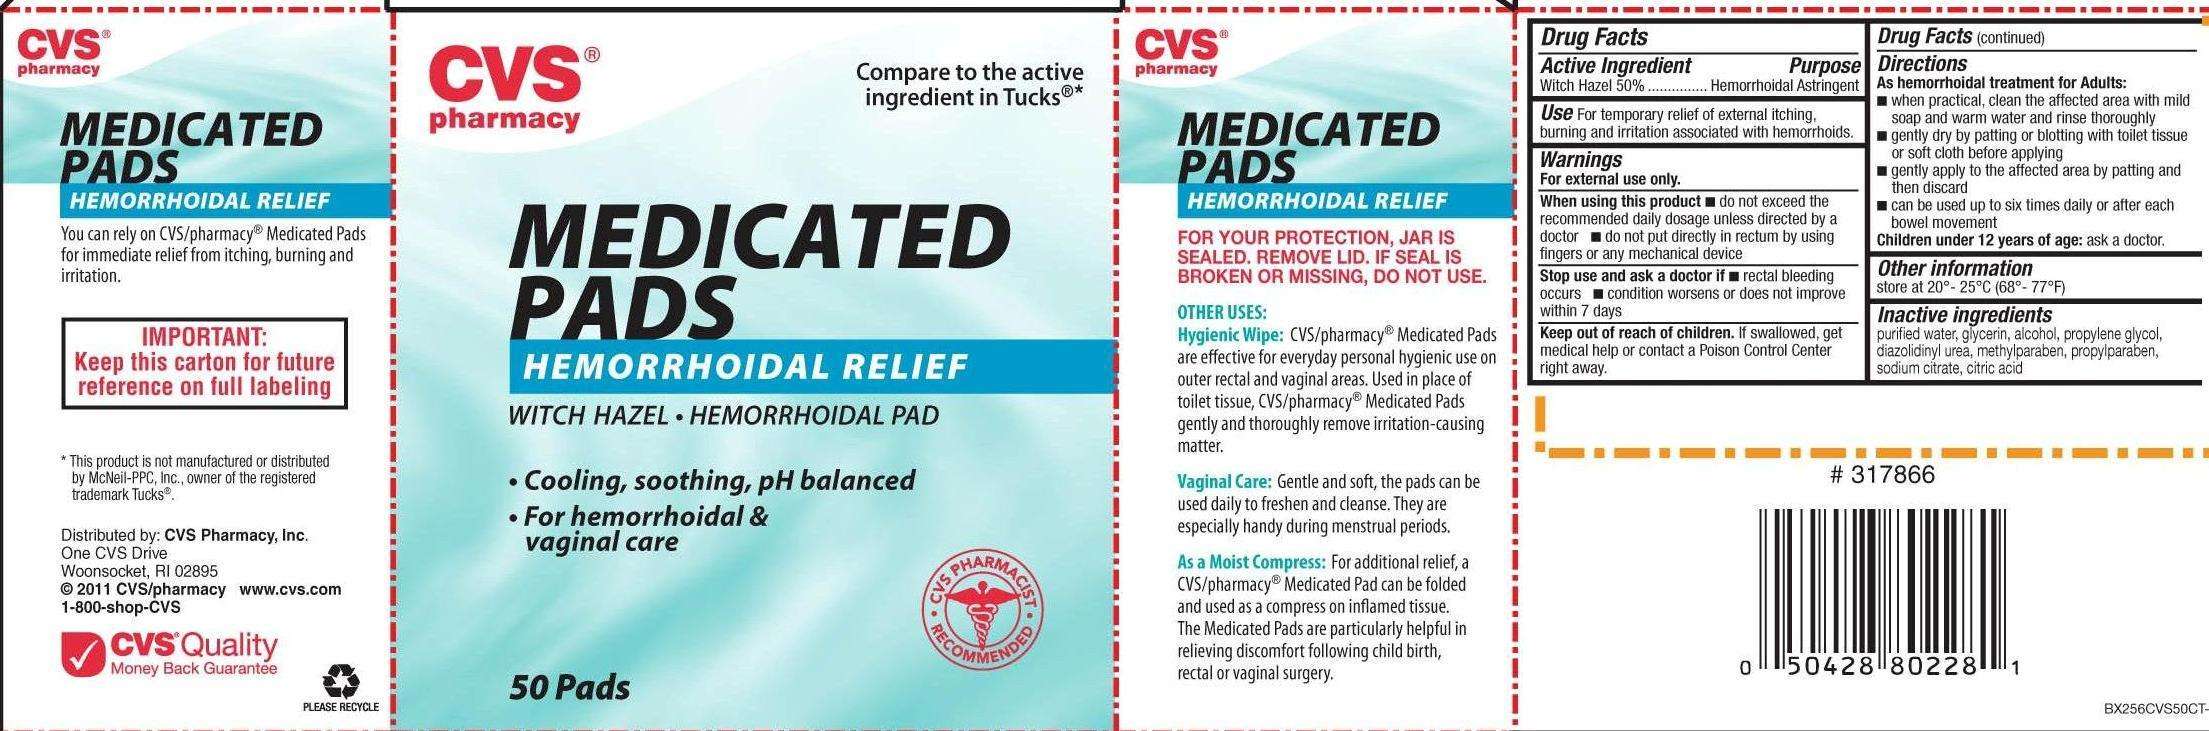 CVS Medicated Pads